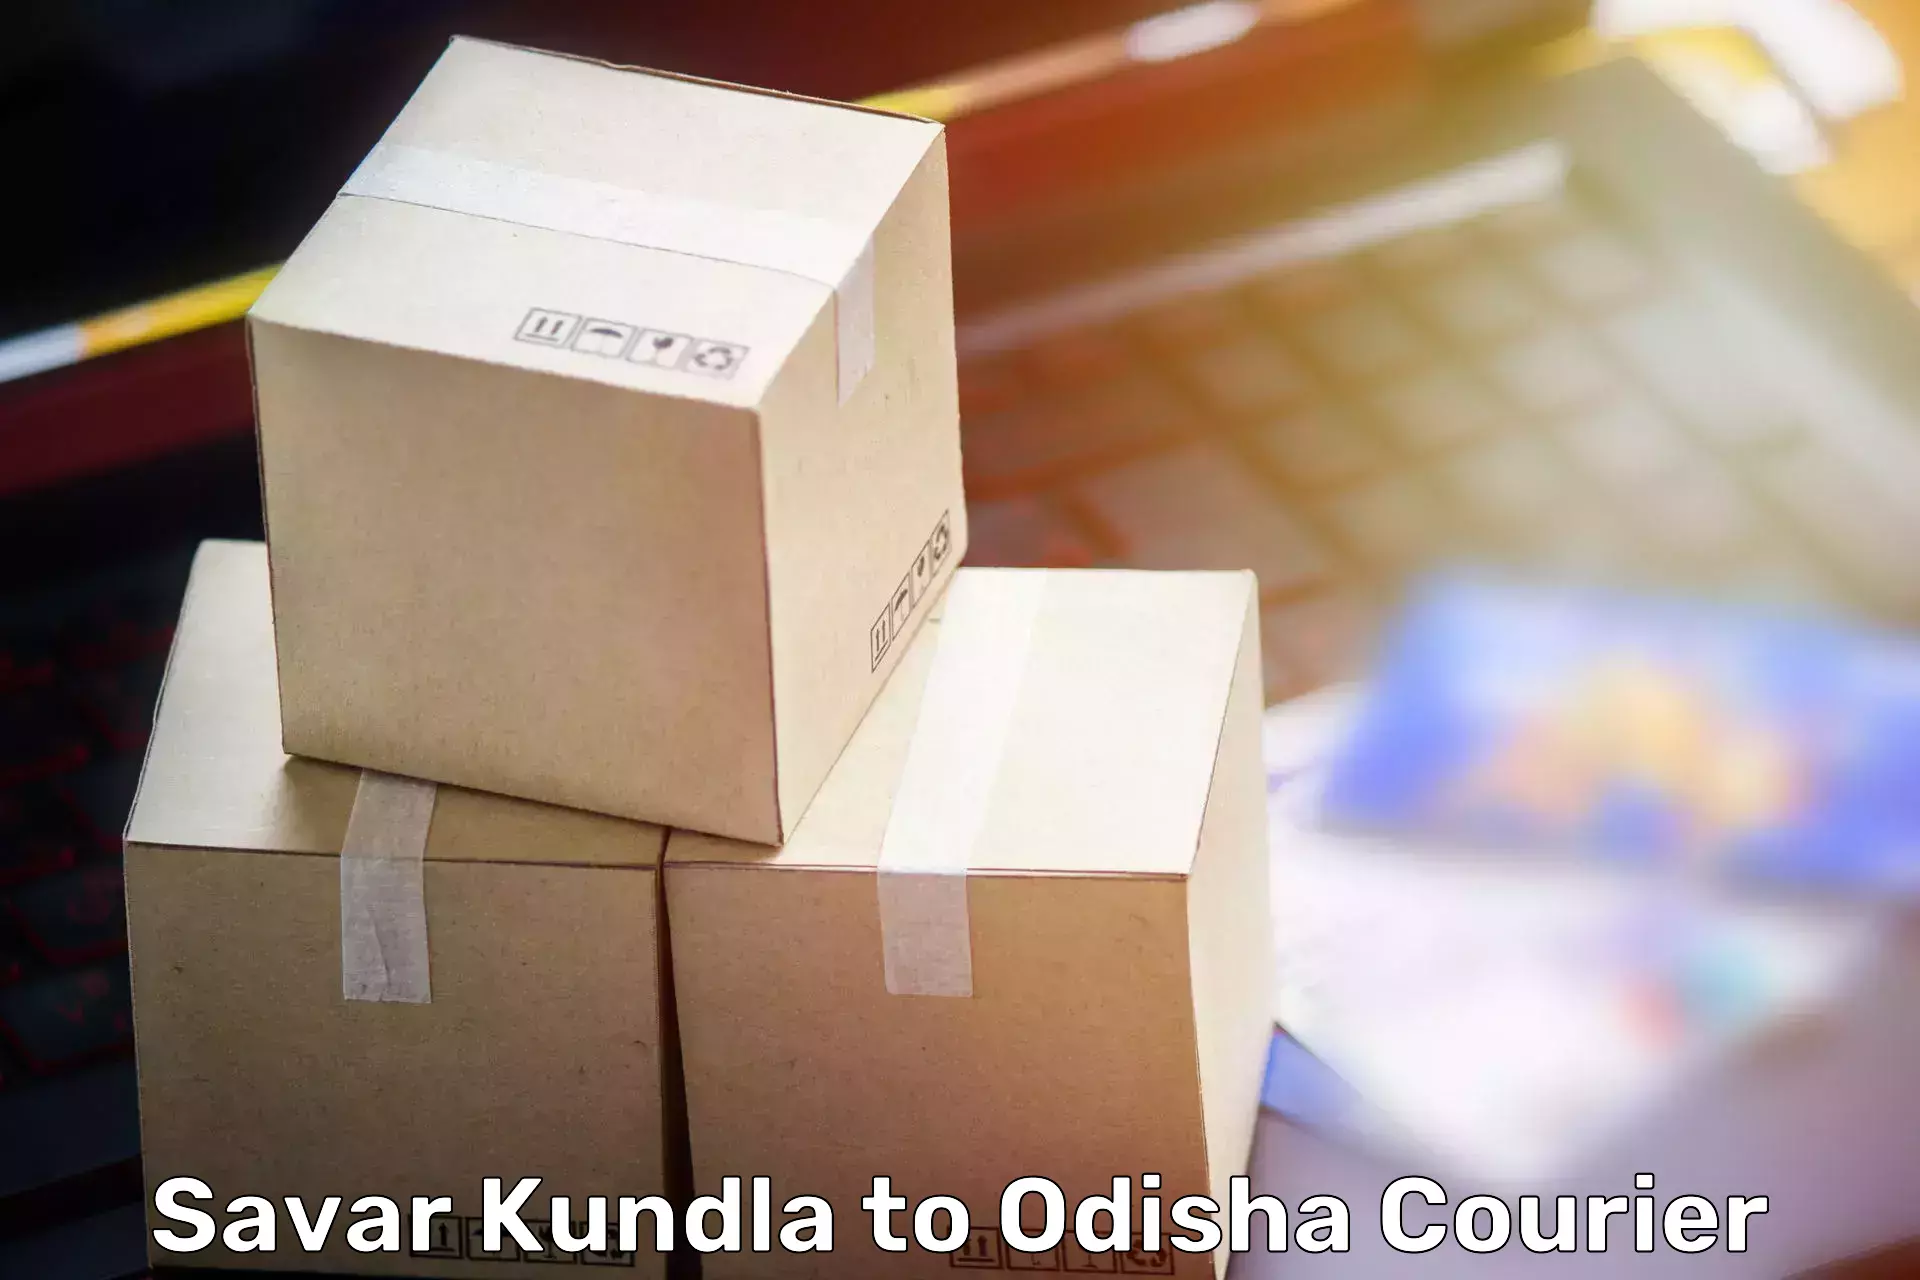 Household moving experts Savar Kundla to Chandikhol